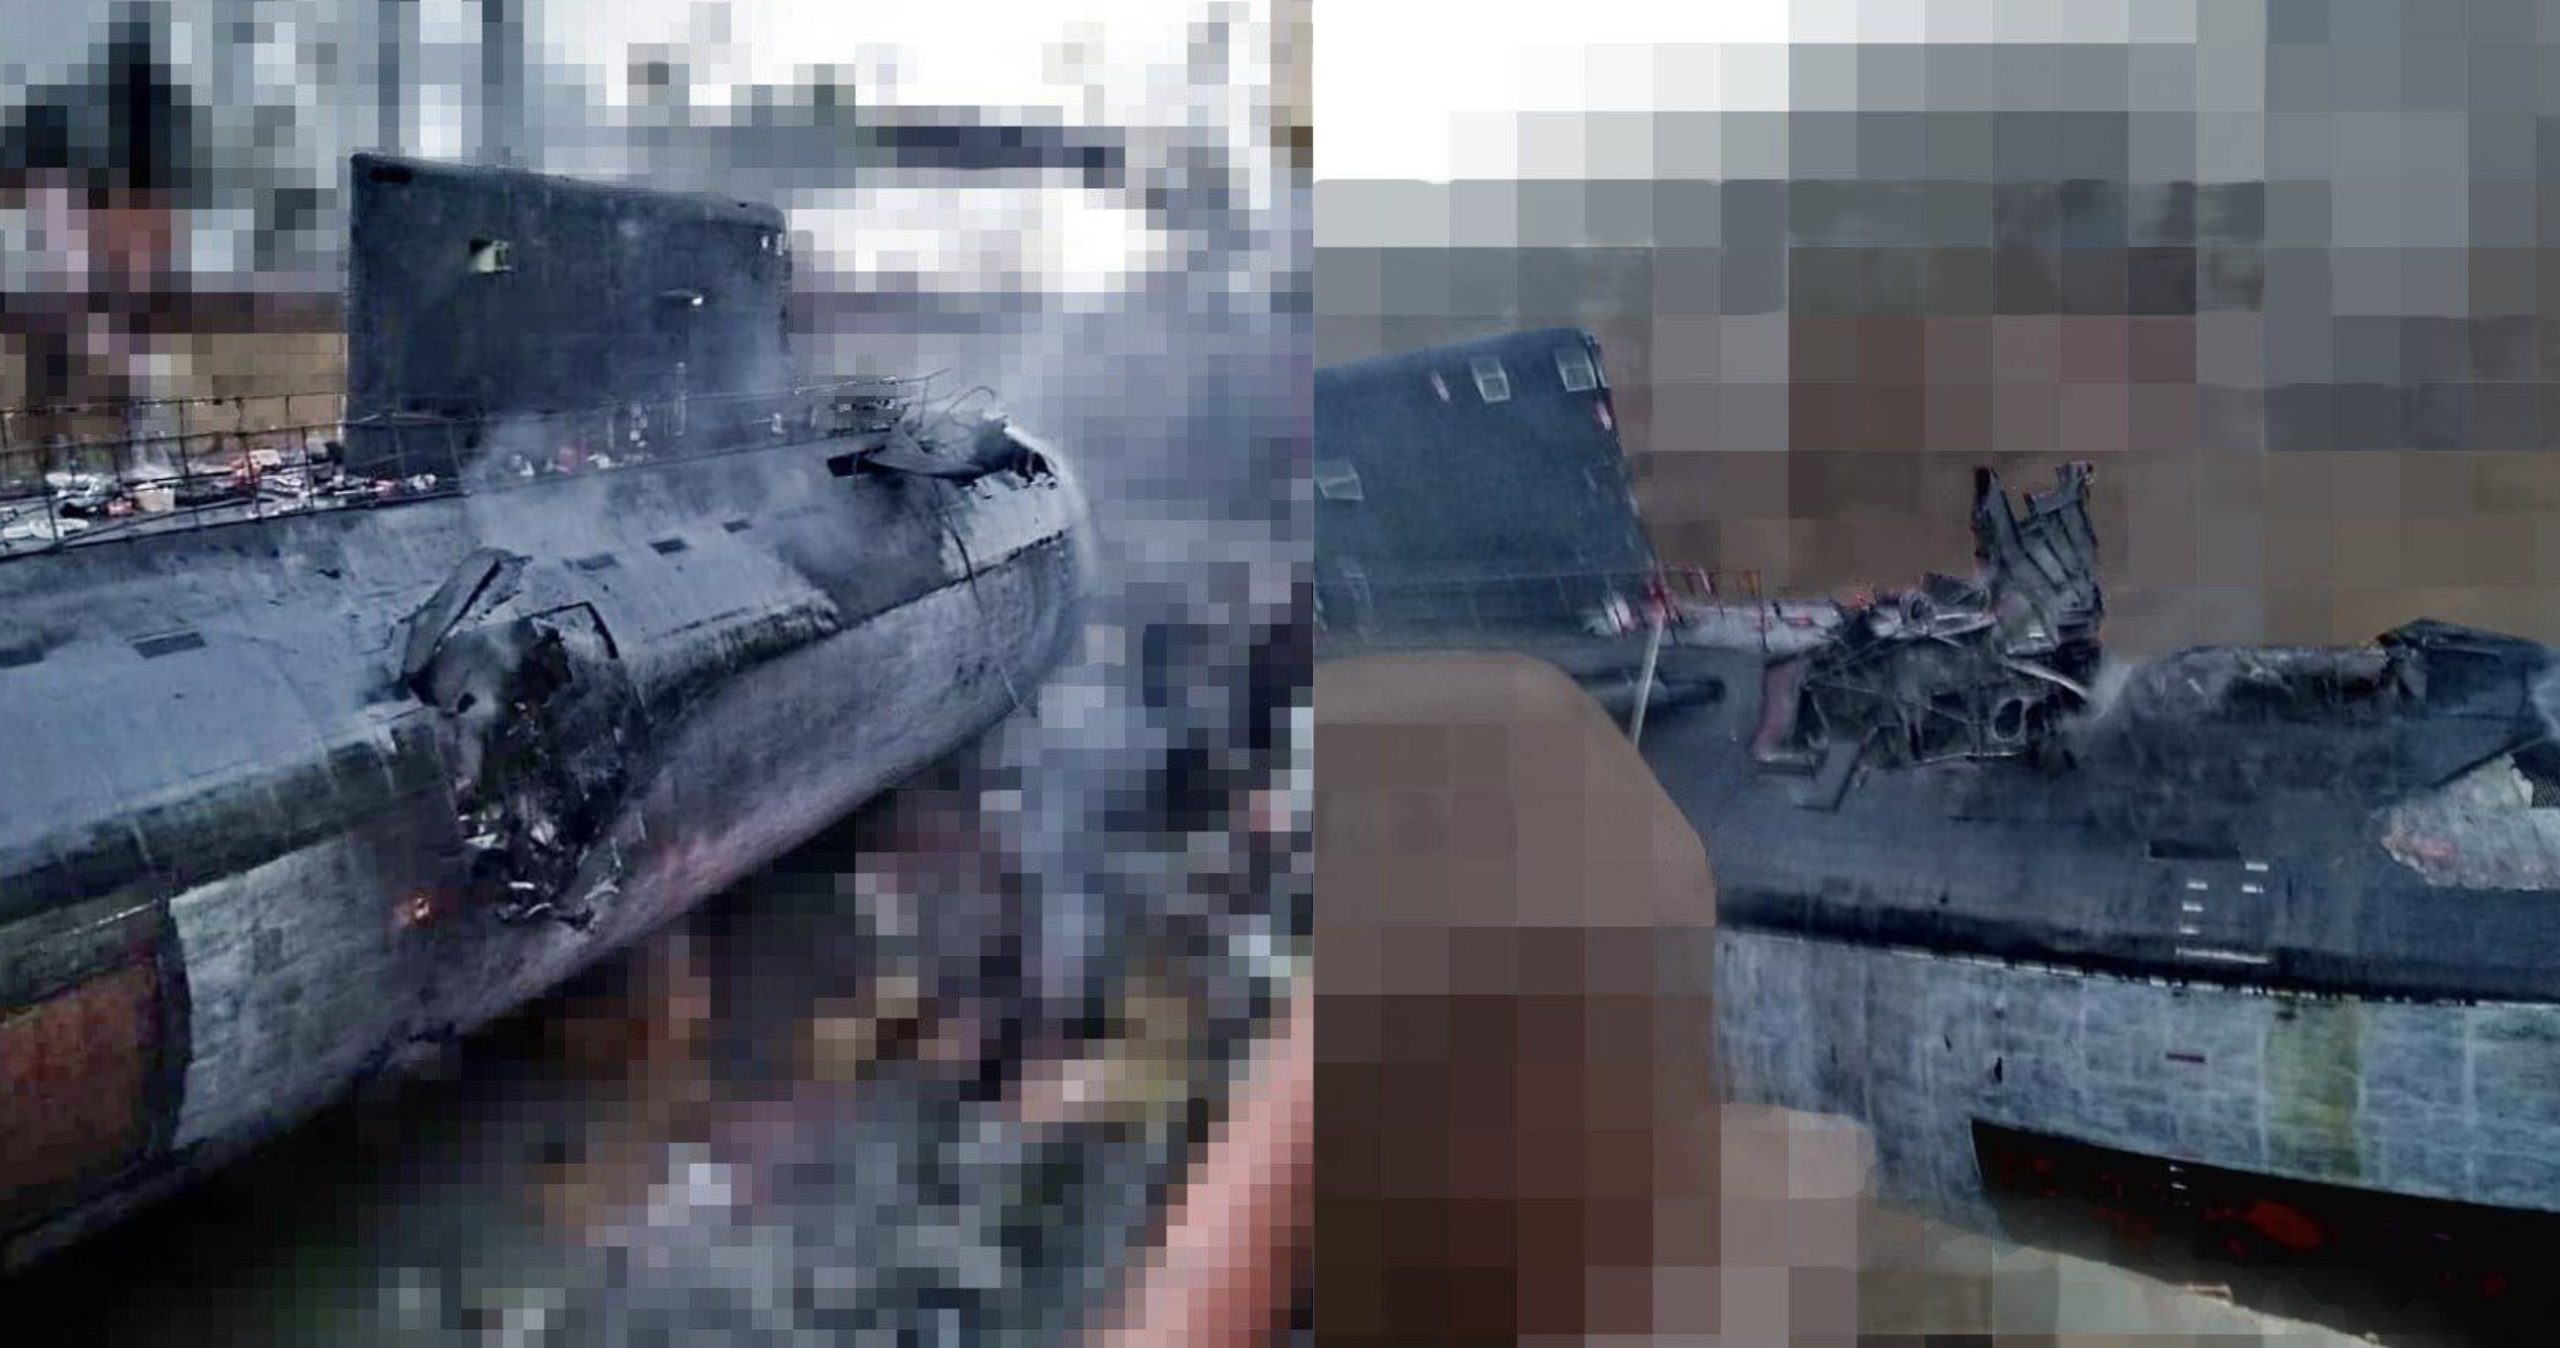 Похоже на фотомонтаж 90-х годов: эксперт раскритиковал кадры последствий попадания ракет в подлодку «Ростов-на-Дону»